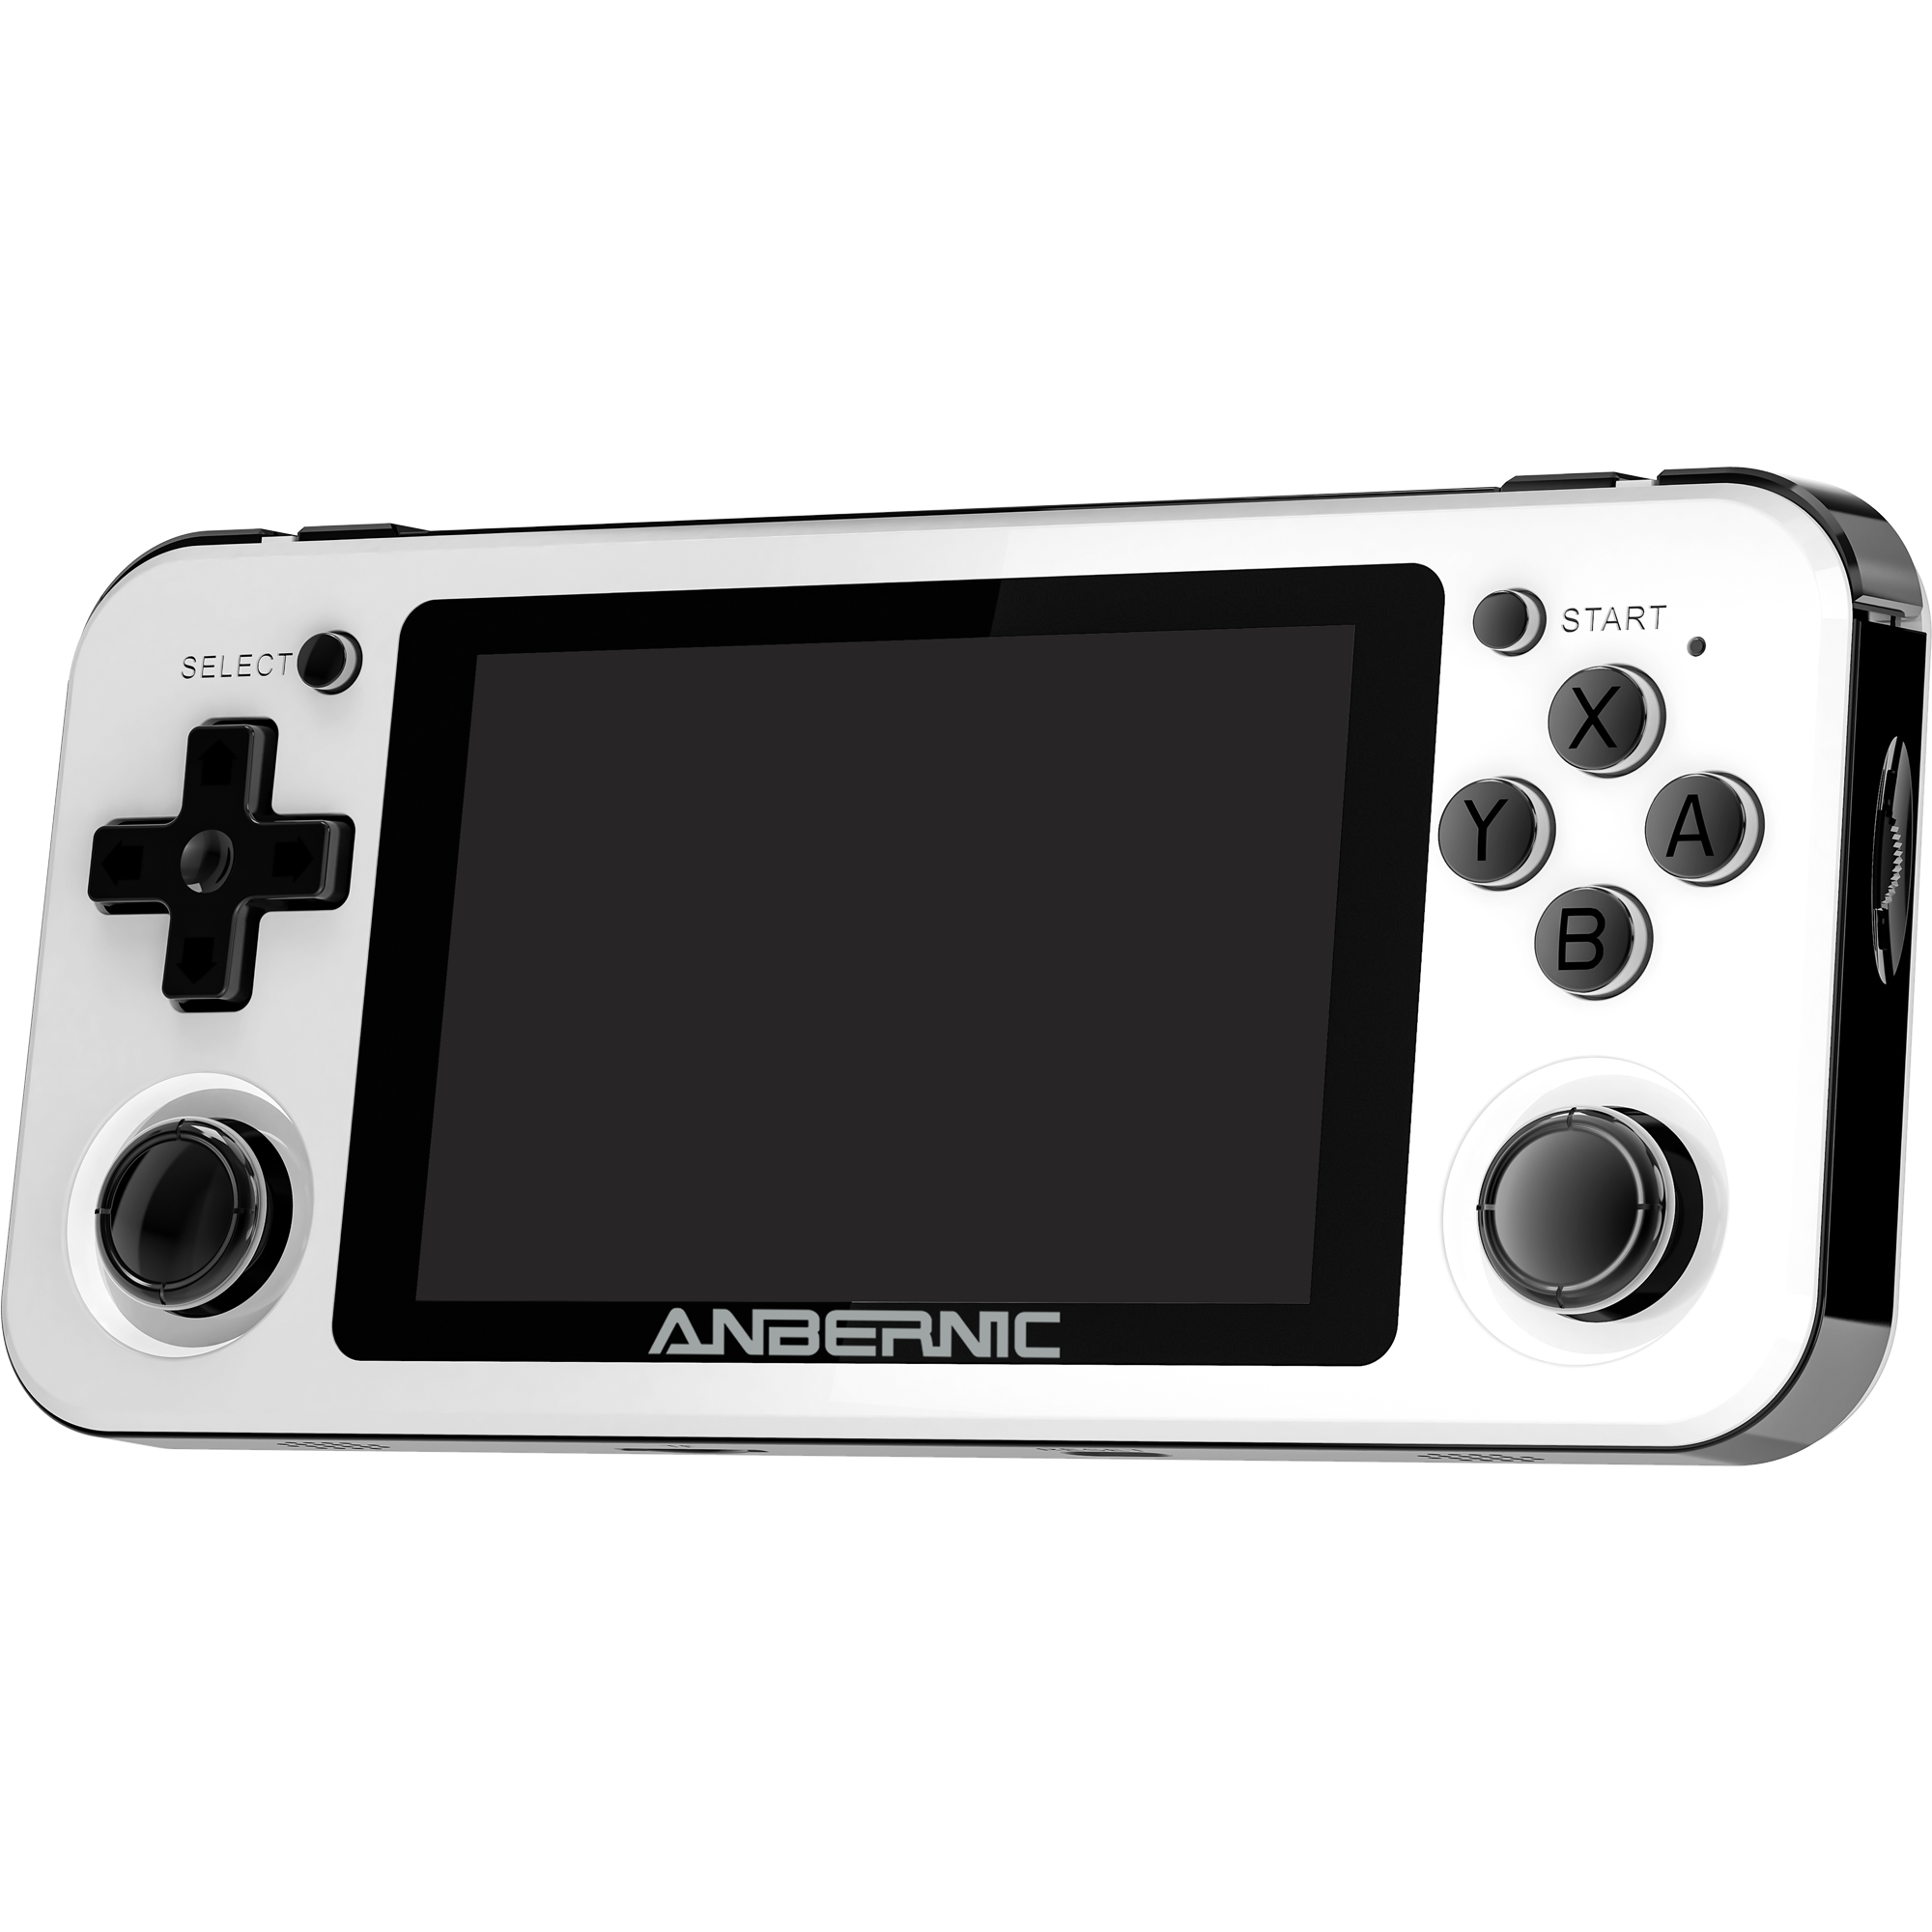 G1 - Conheça cinco jogos do Wii U que chegam com o console no